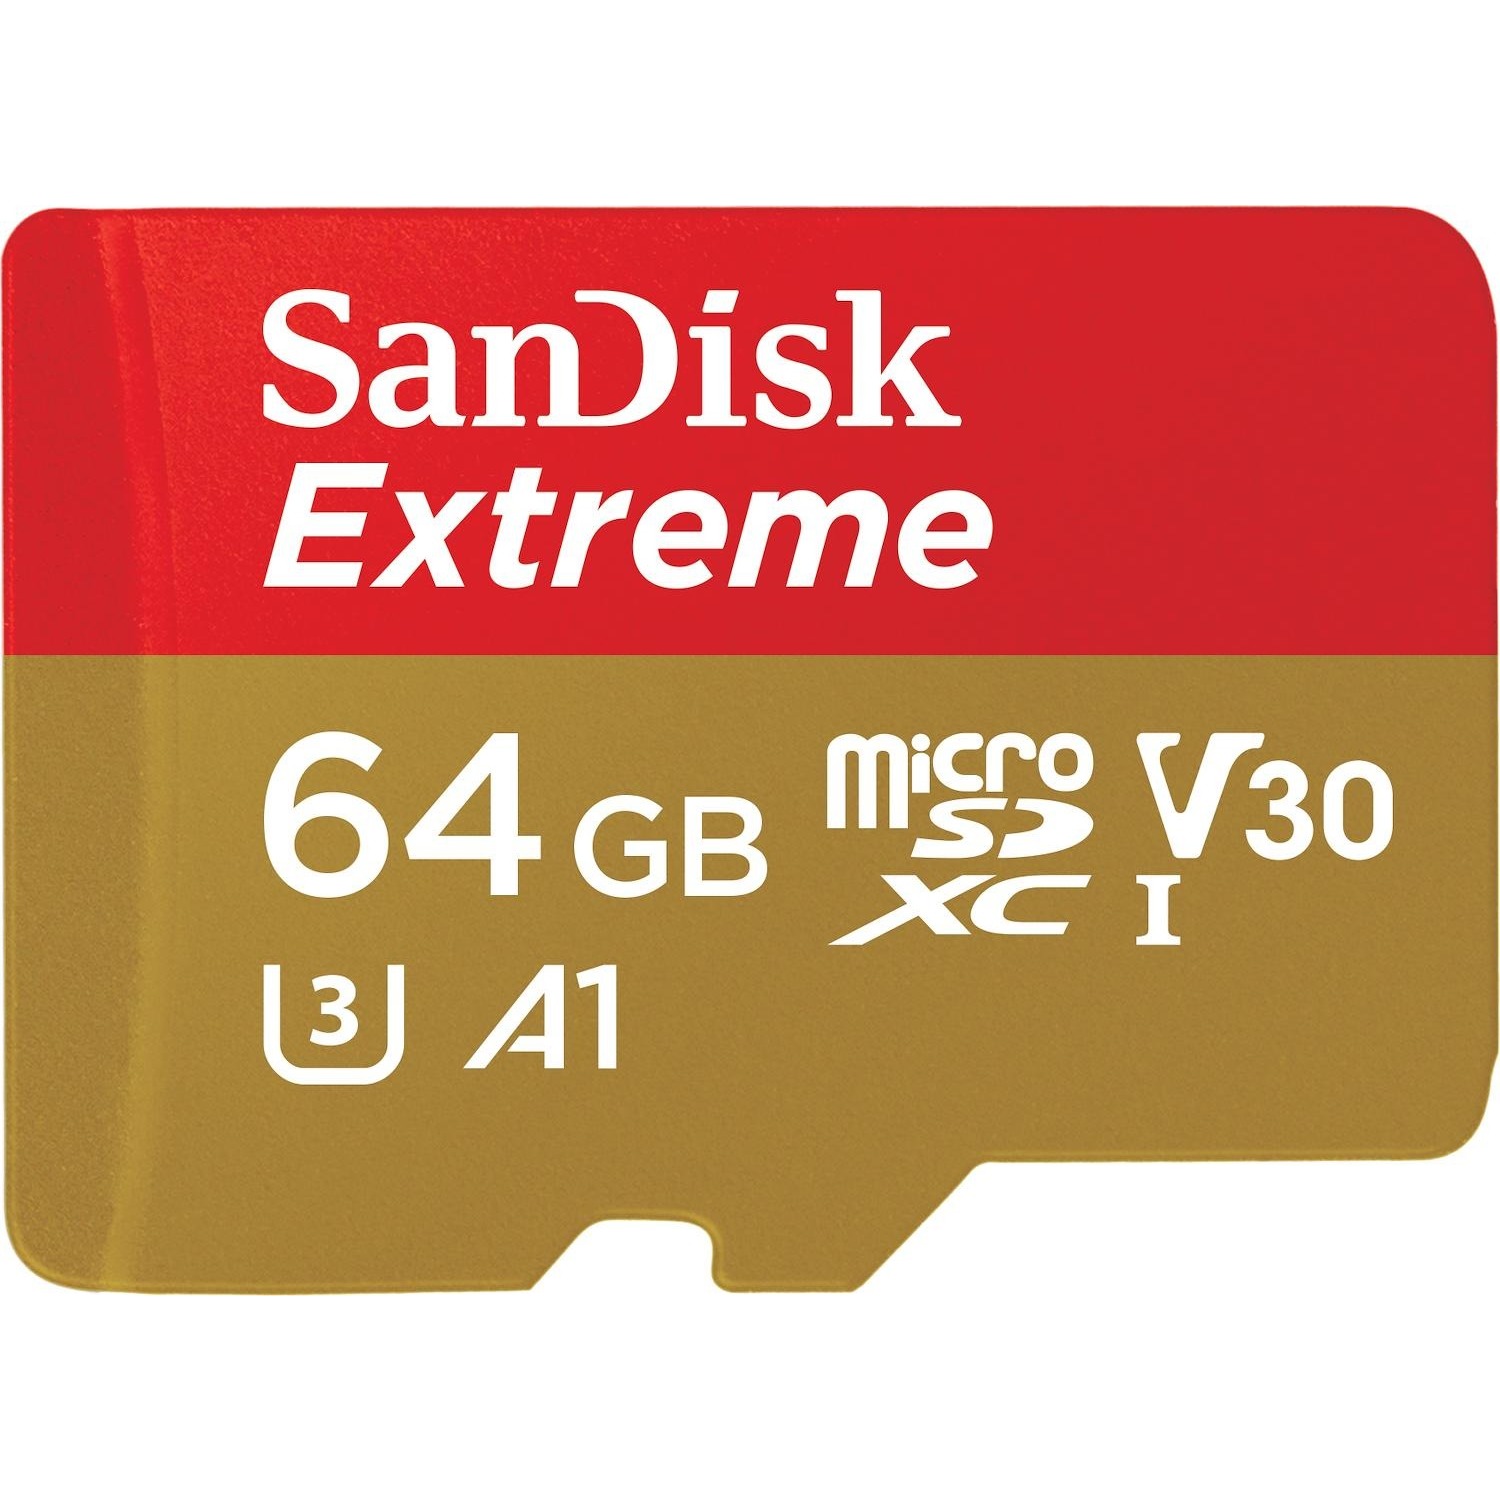 Immagine per MicroSD San Disk Extreme Mobile 64GB XC con       adattatore SD da DIMOStore